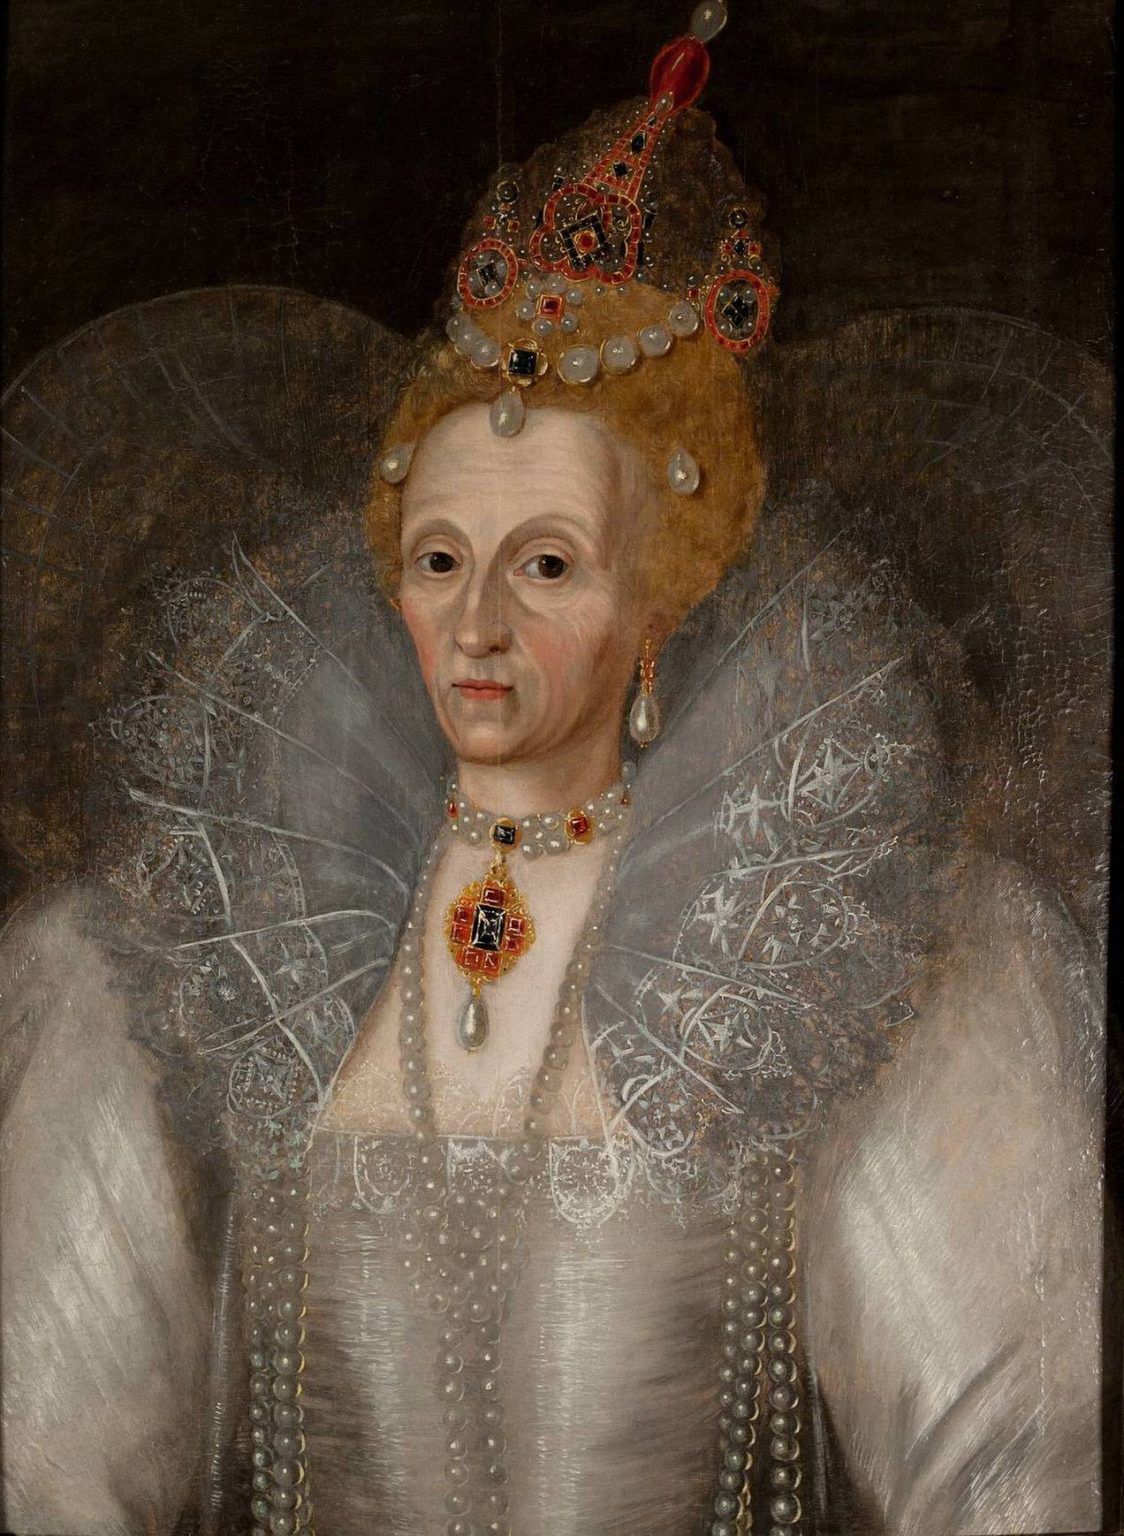 Portret Elżbiety I z około 1595 roku autorstwa Marcusa Gheeraertsa starszeego. W tym czasie władczyni była już znana ze swoich problemów z uzębieniem